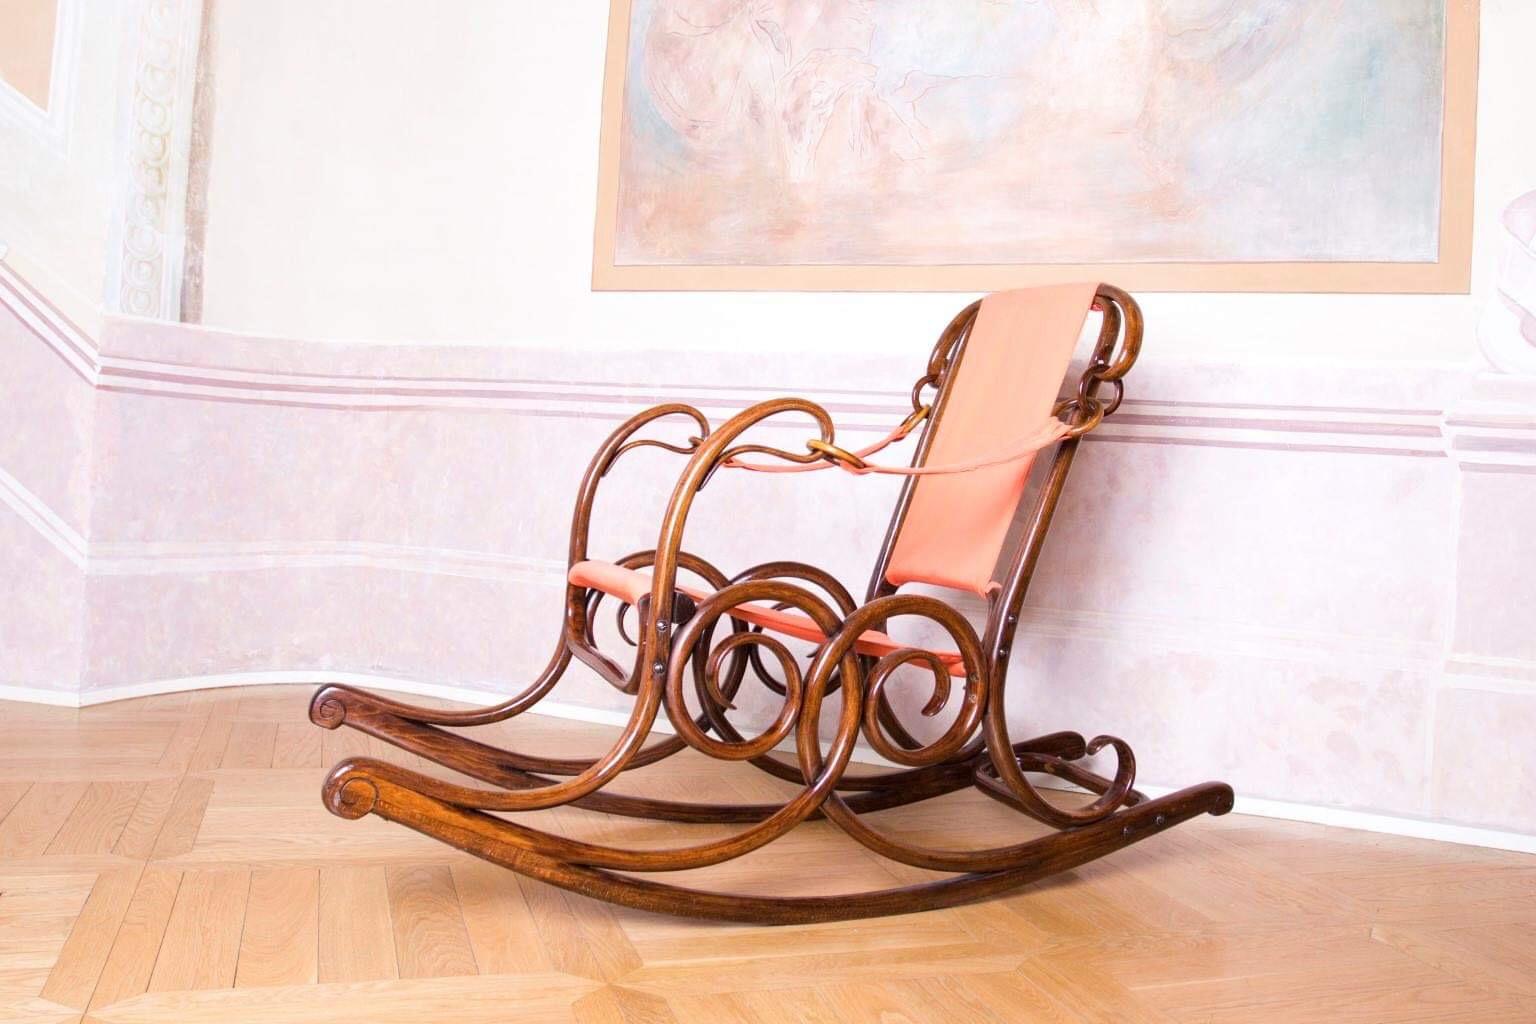 Austrian Wien Thonet Art Nouveau Rocking Chair No.3 For Sale